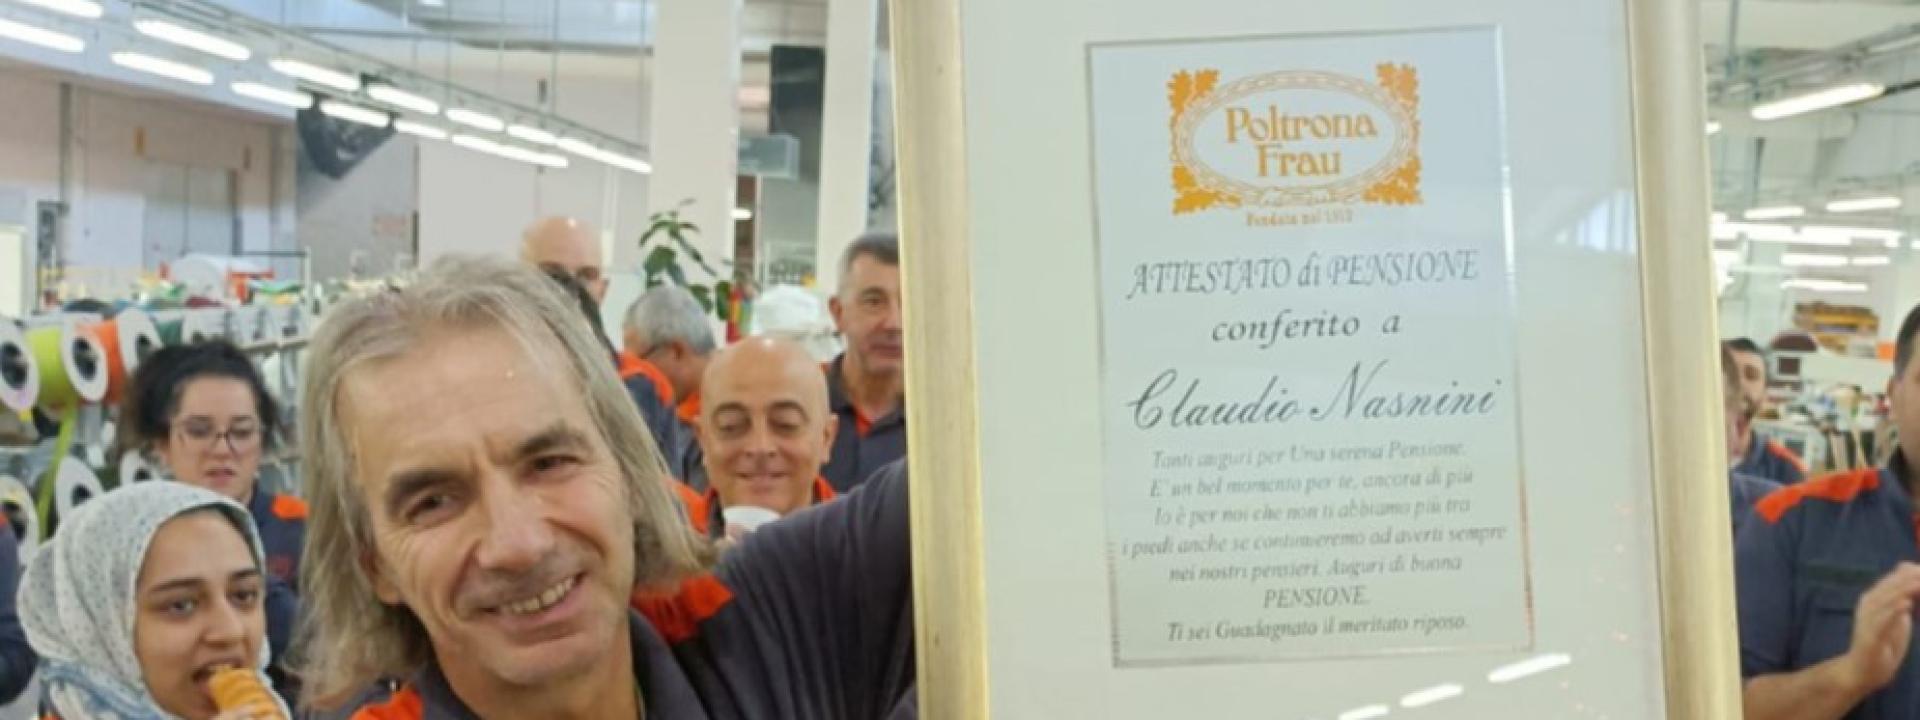 Marche - Tolentino,  Claudio Nasnini va in pensione festeggiato dai colleghi